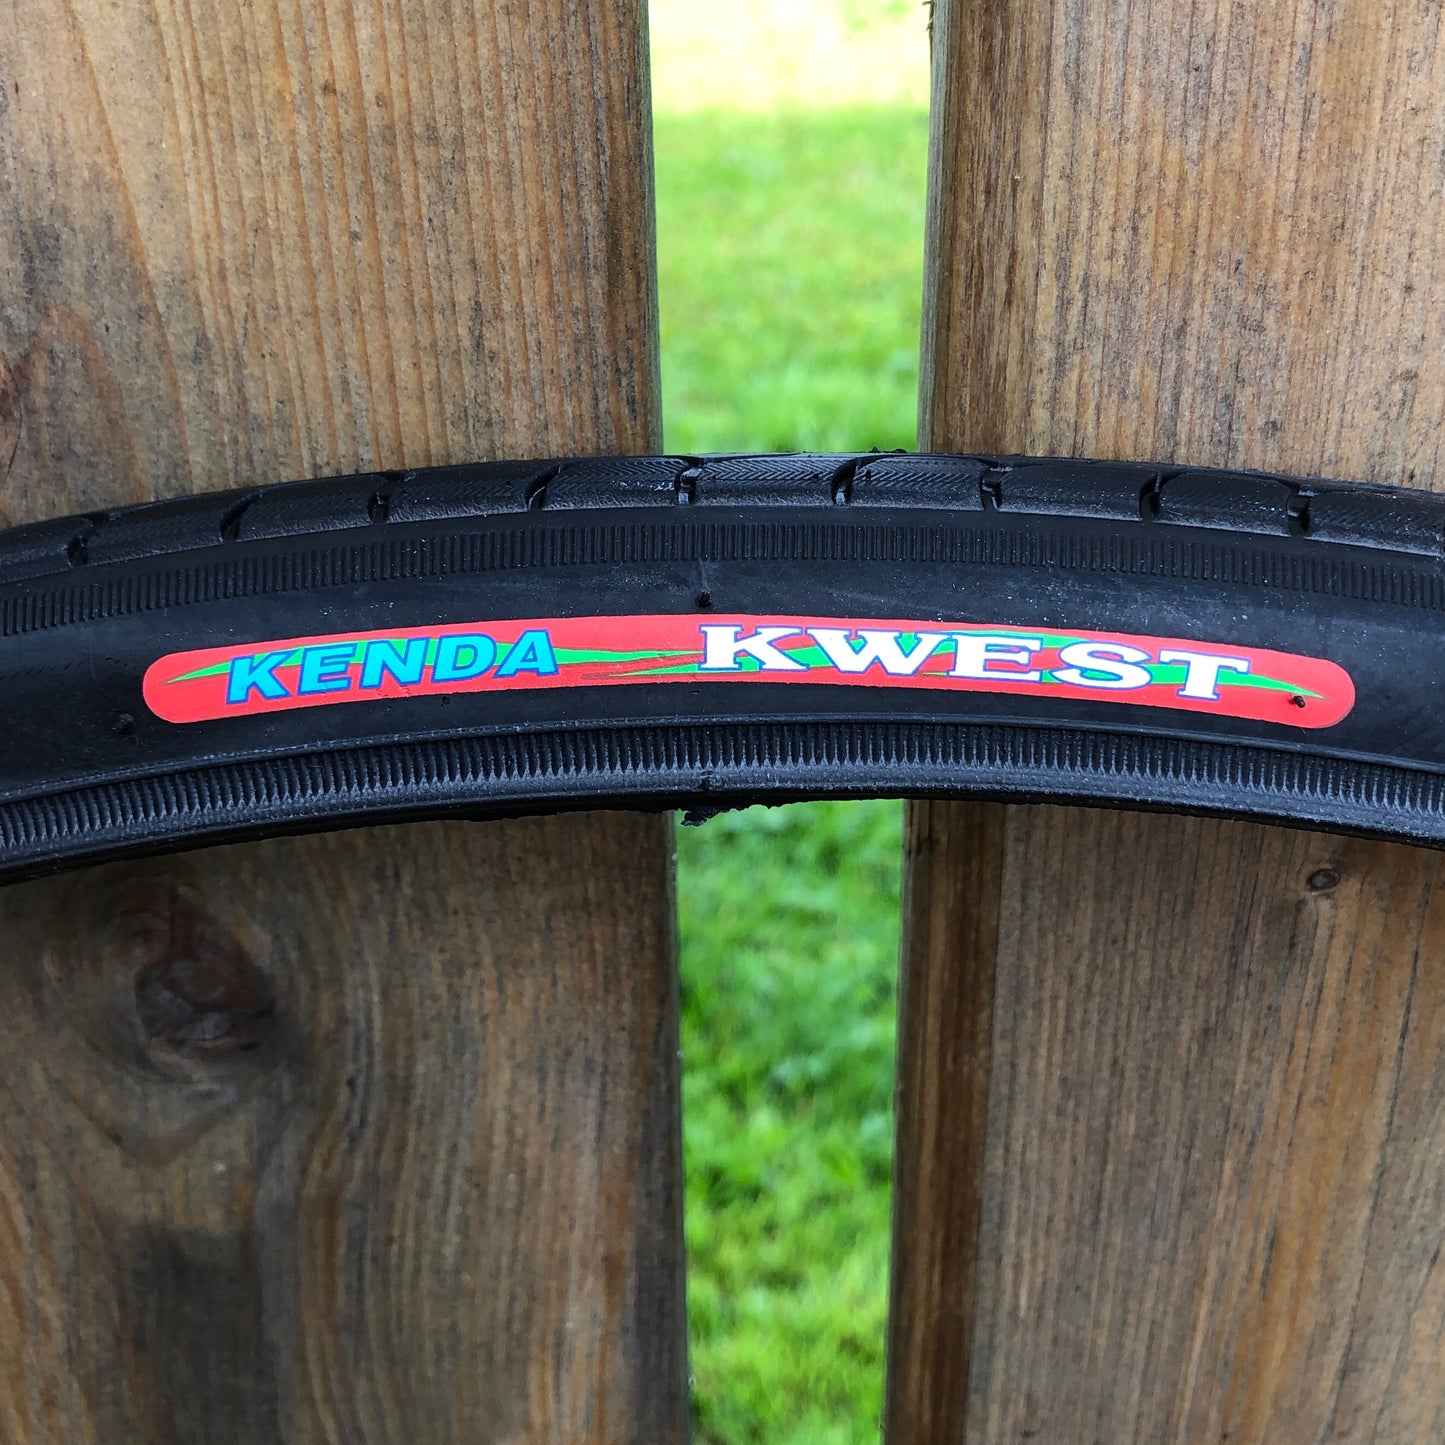 622-Kenda "Kwest" with K-Shield 700 x 32 (32-622) Tire